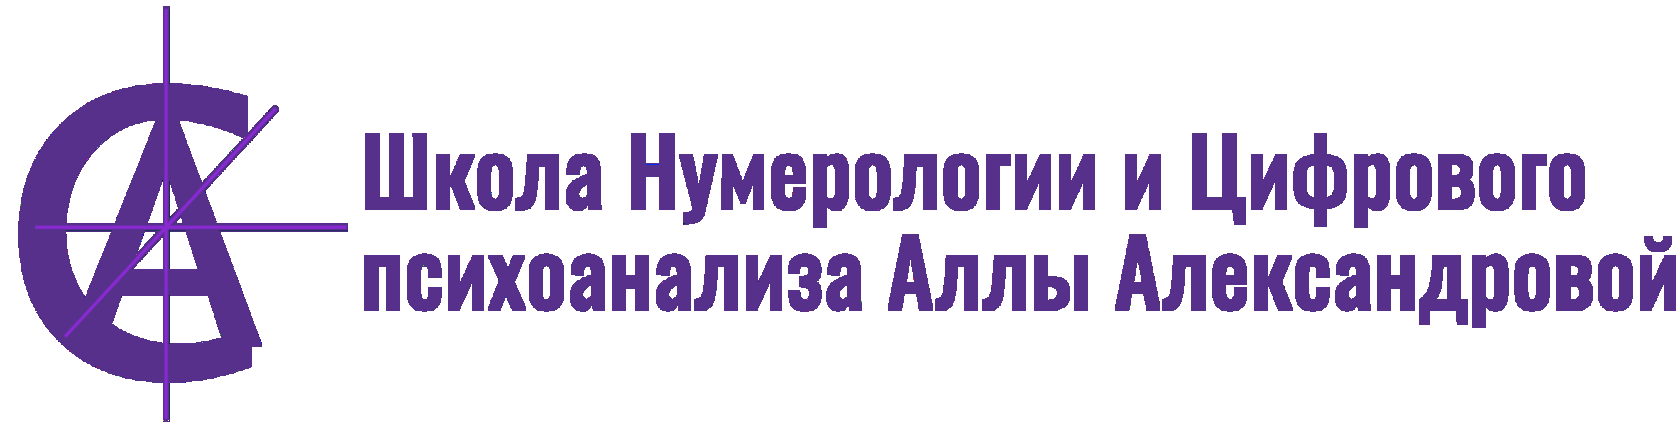  Школа Нумерологии и Цифрового психоанализа Аллы Александровой 